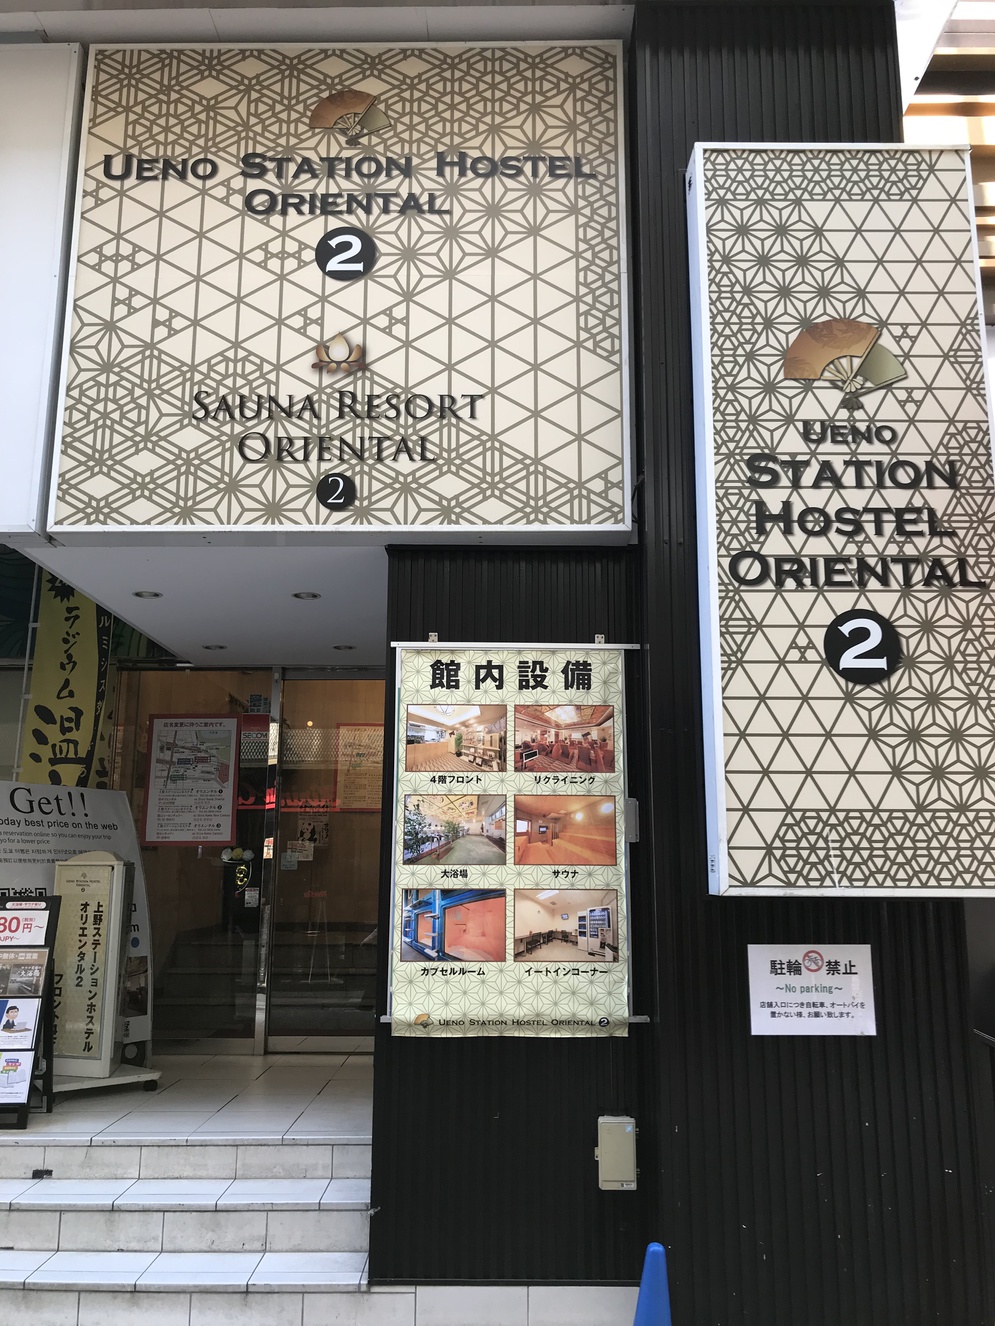 上野ステーションホステル オリエンタル ２ 宿泊予約 楽天トラベル